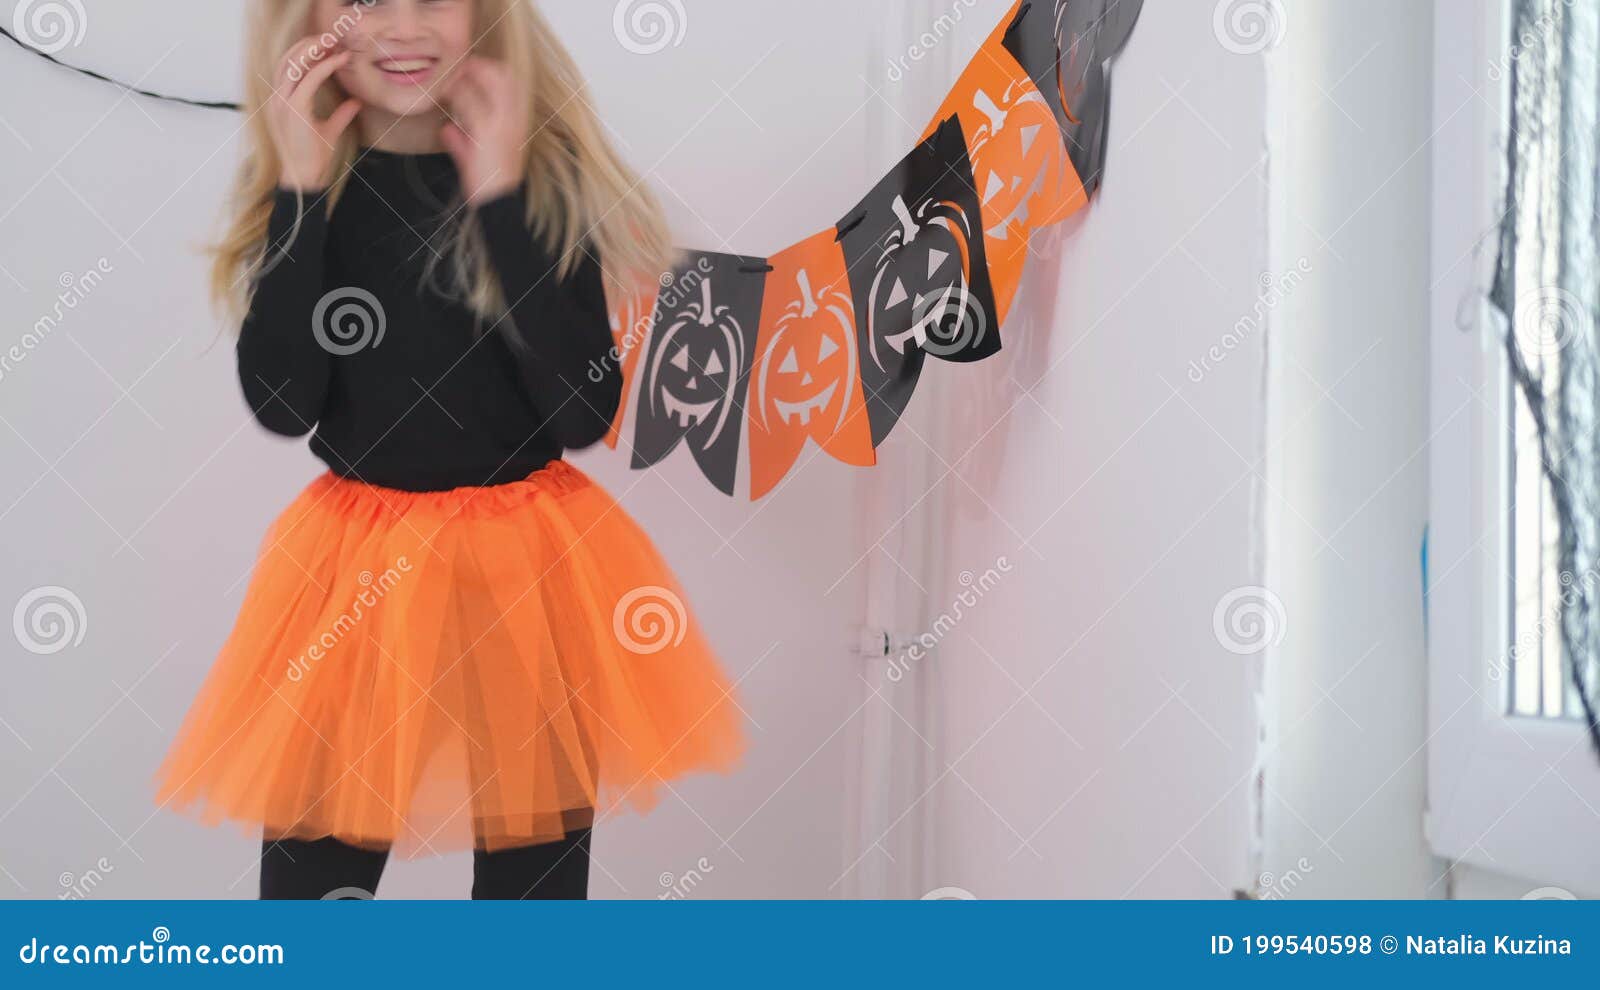 Crianças do dia das bruxas garotinho engraçado usando um chapéu de bruxa  com balões laranja e pretos feliz dia das bruxas